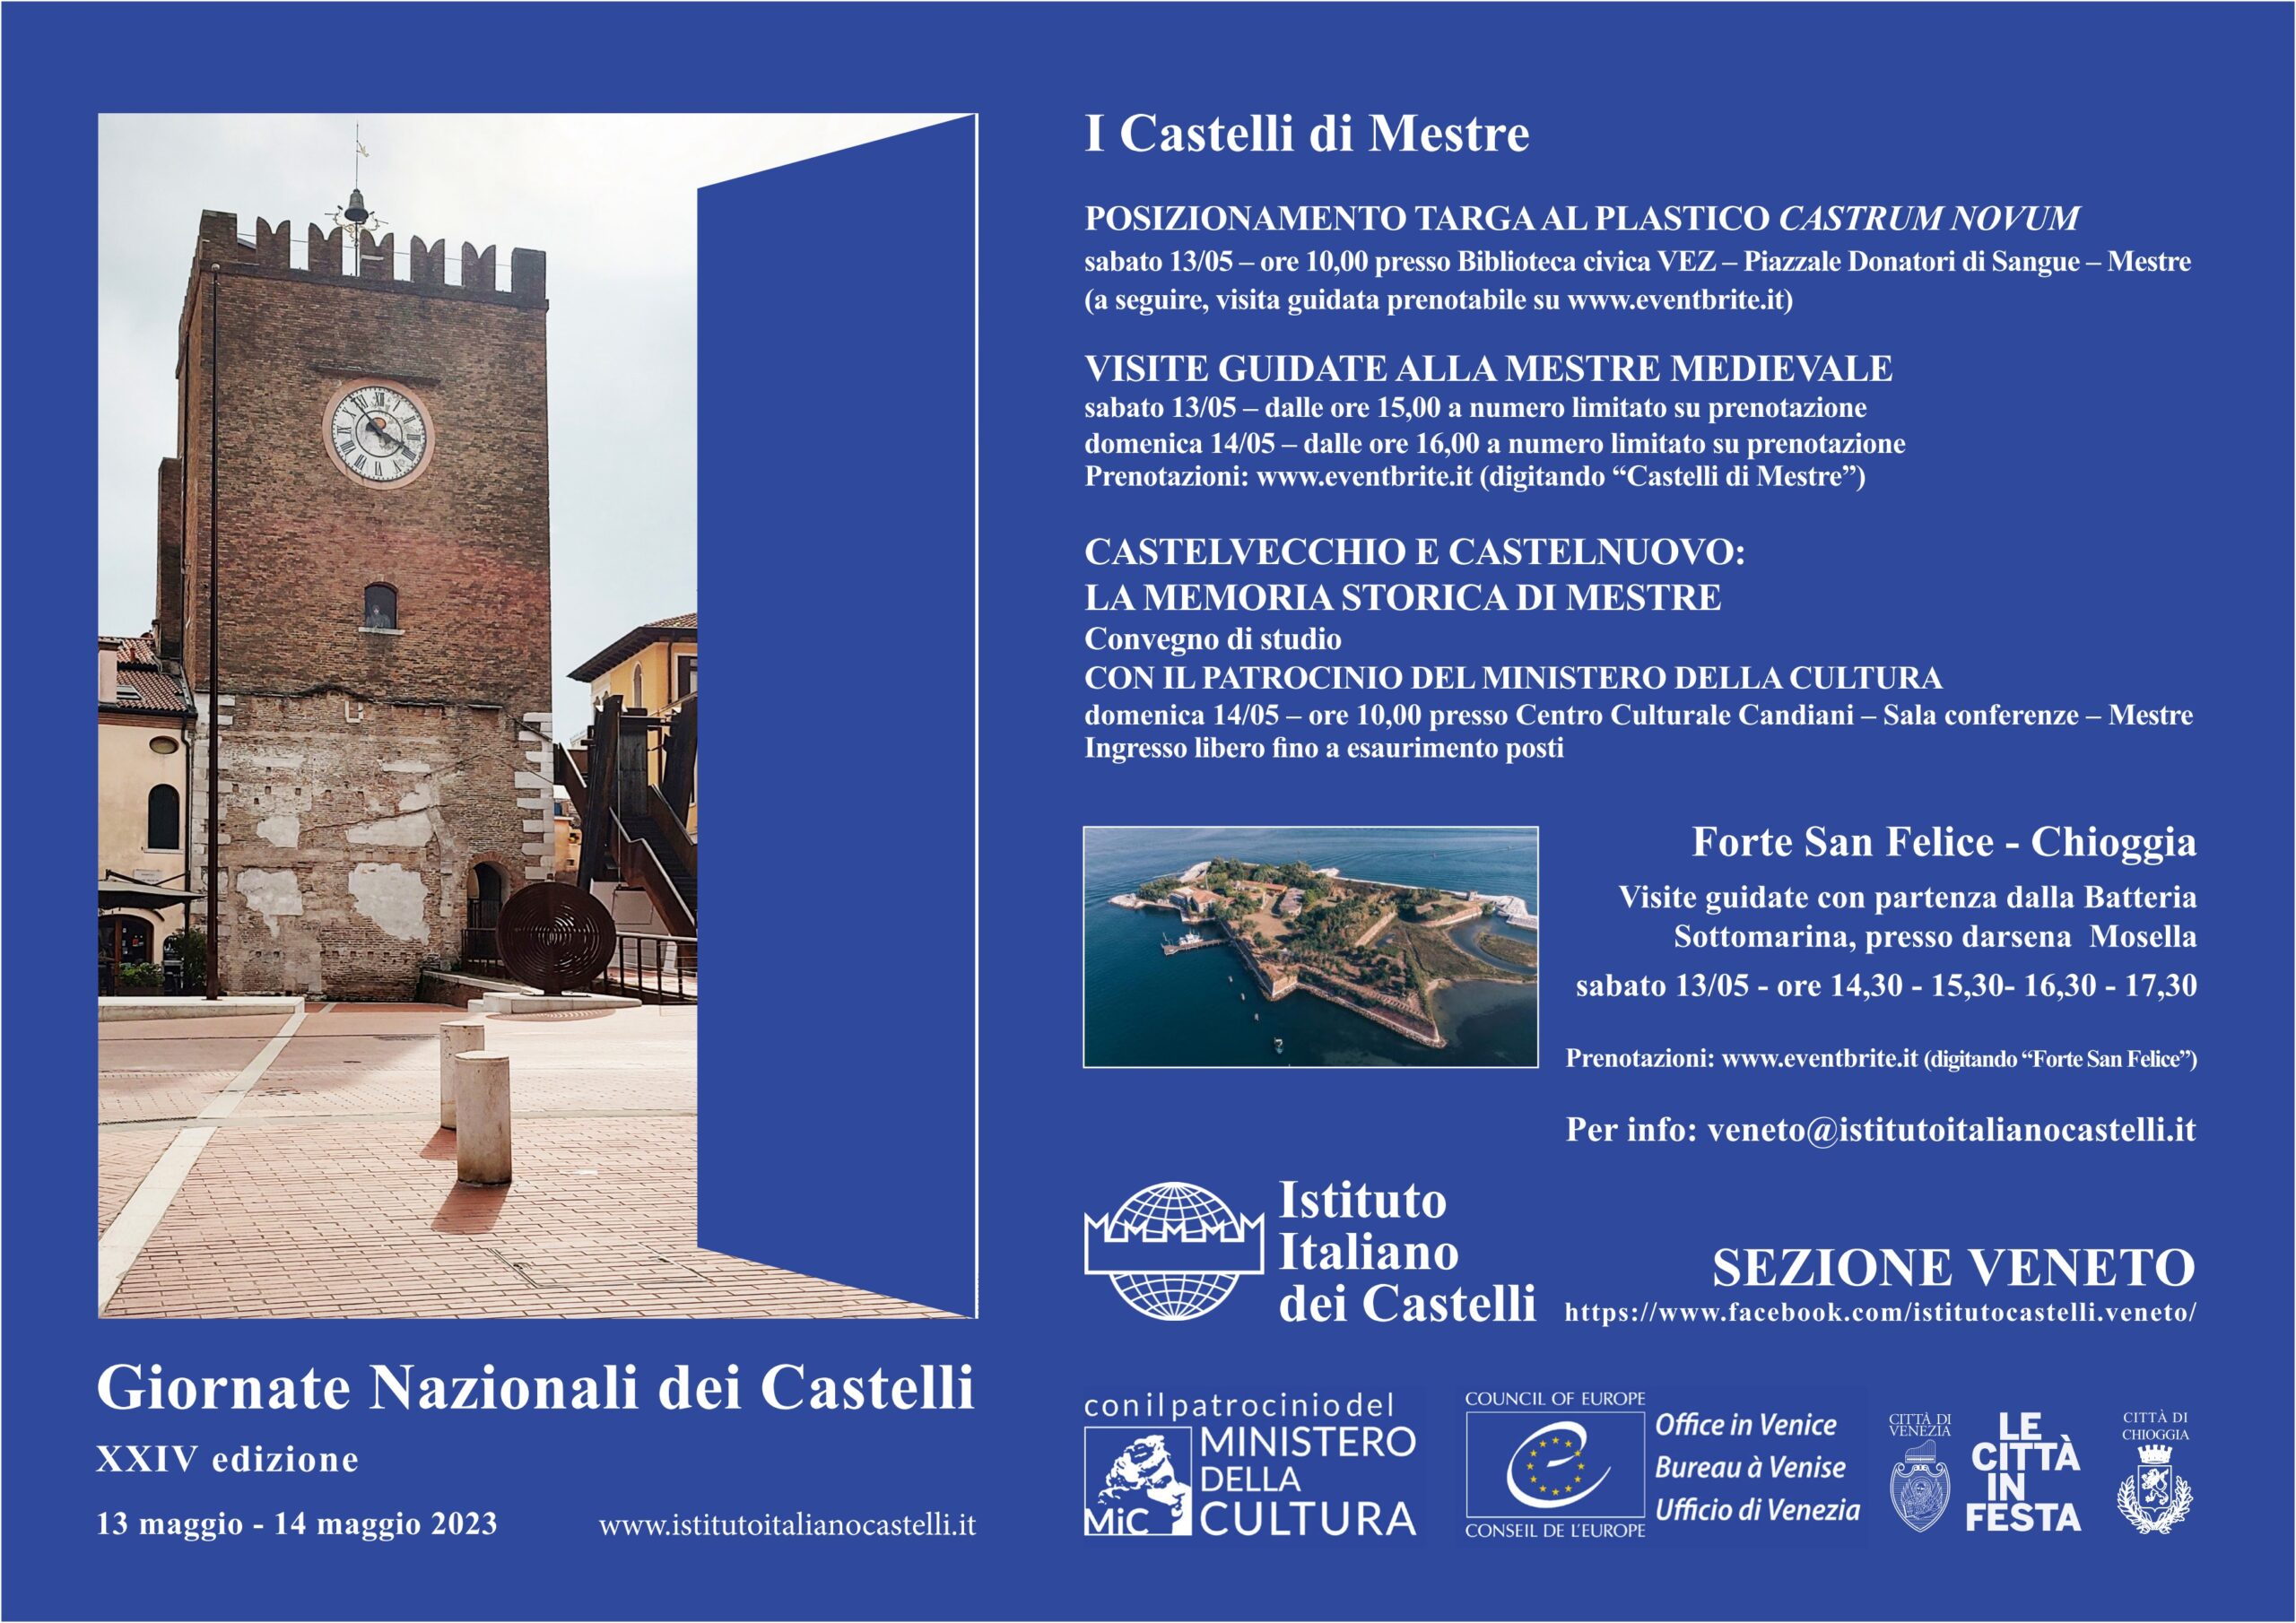 Giornate Nazionali dei Castelli 2023 – Veneto